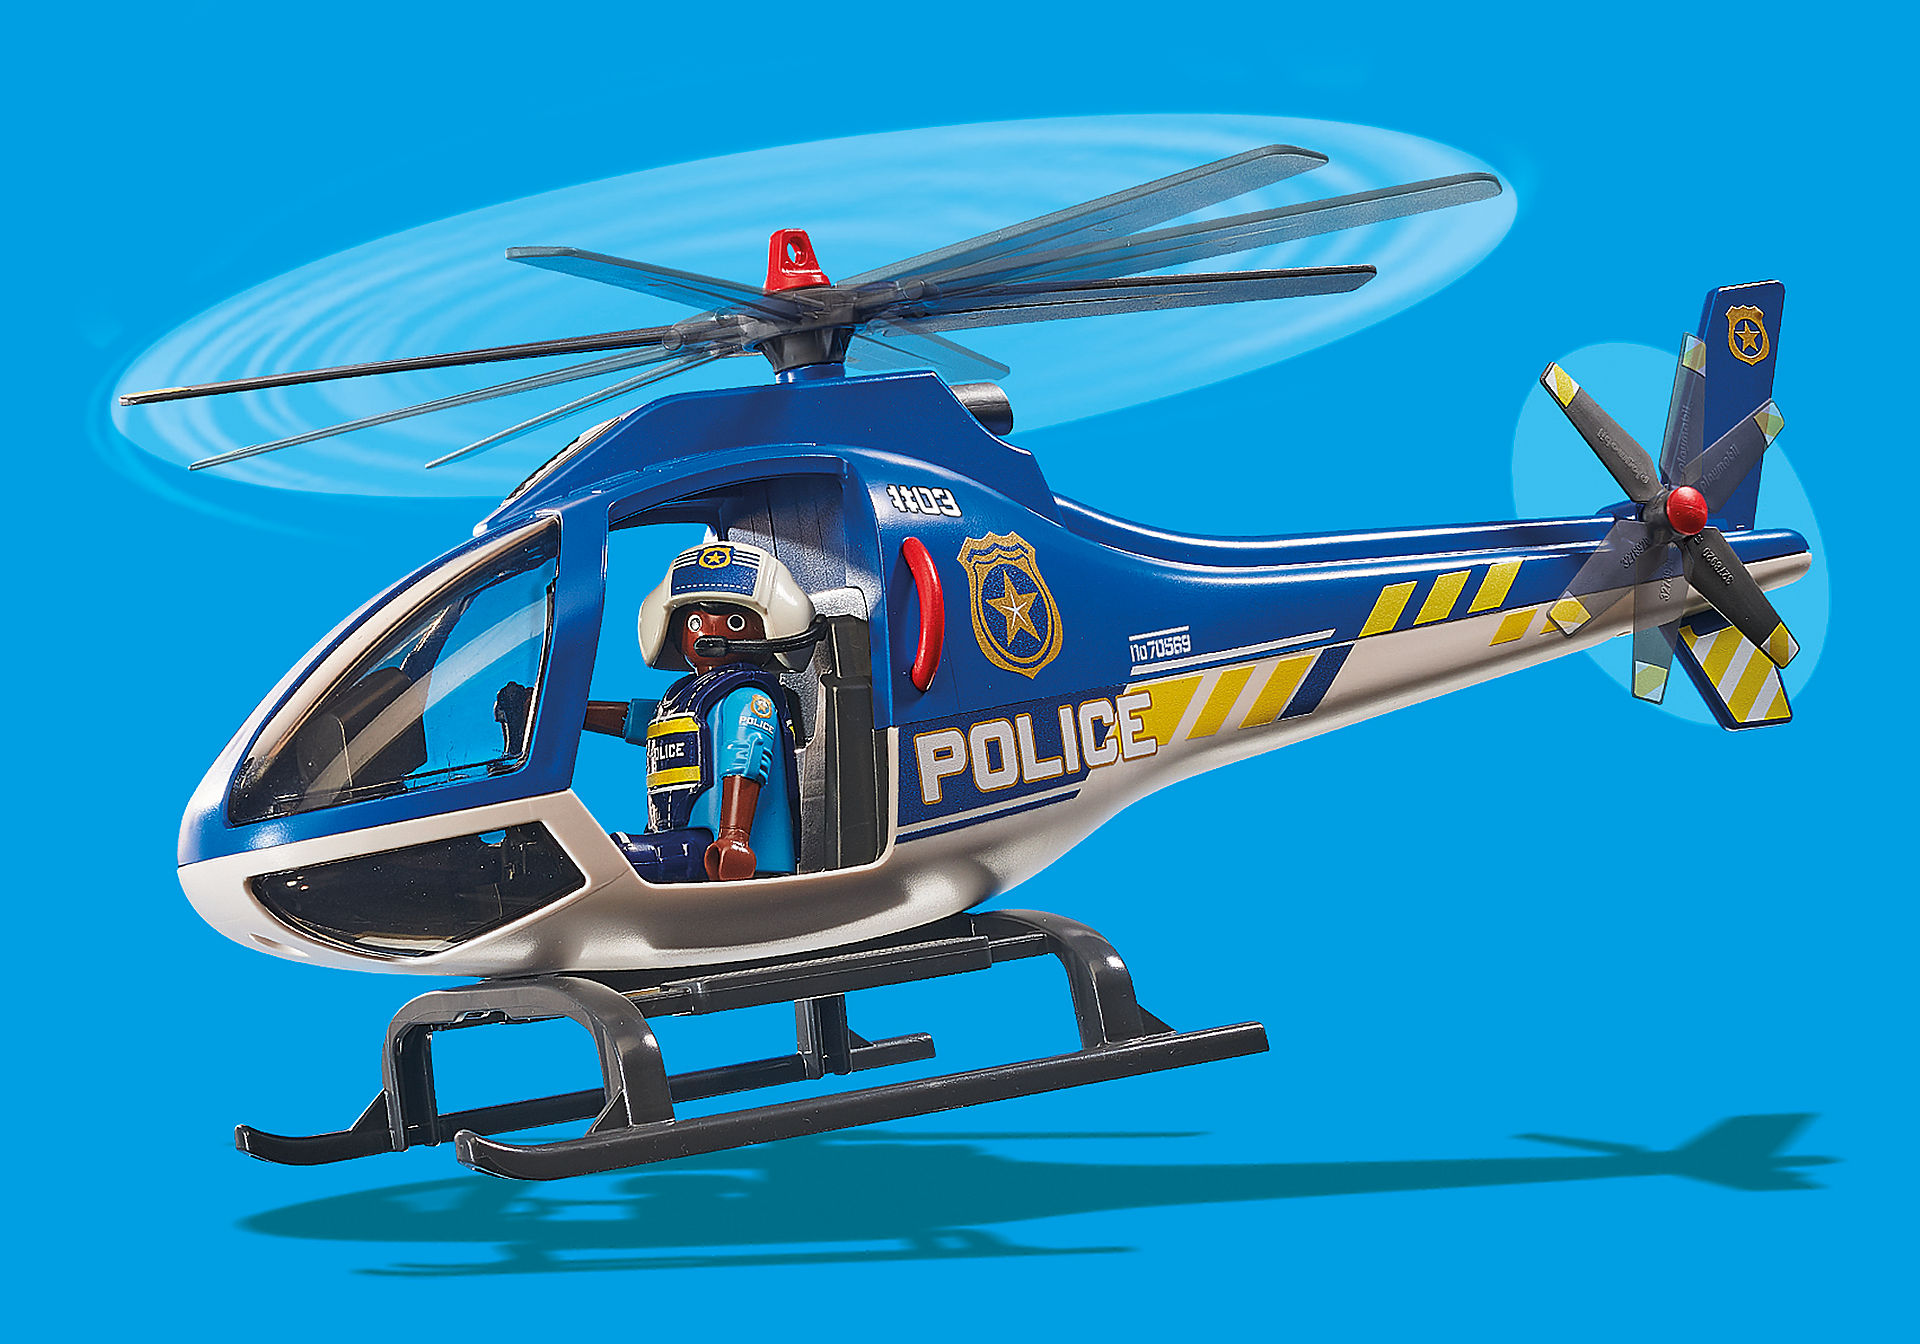 70569 Helicoptero de busca - Policia com Pára-quedas zoom image6